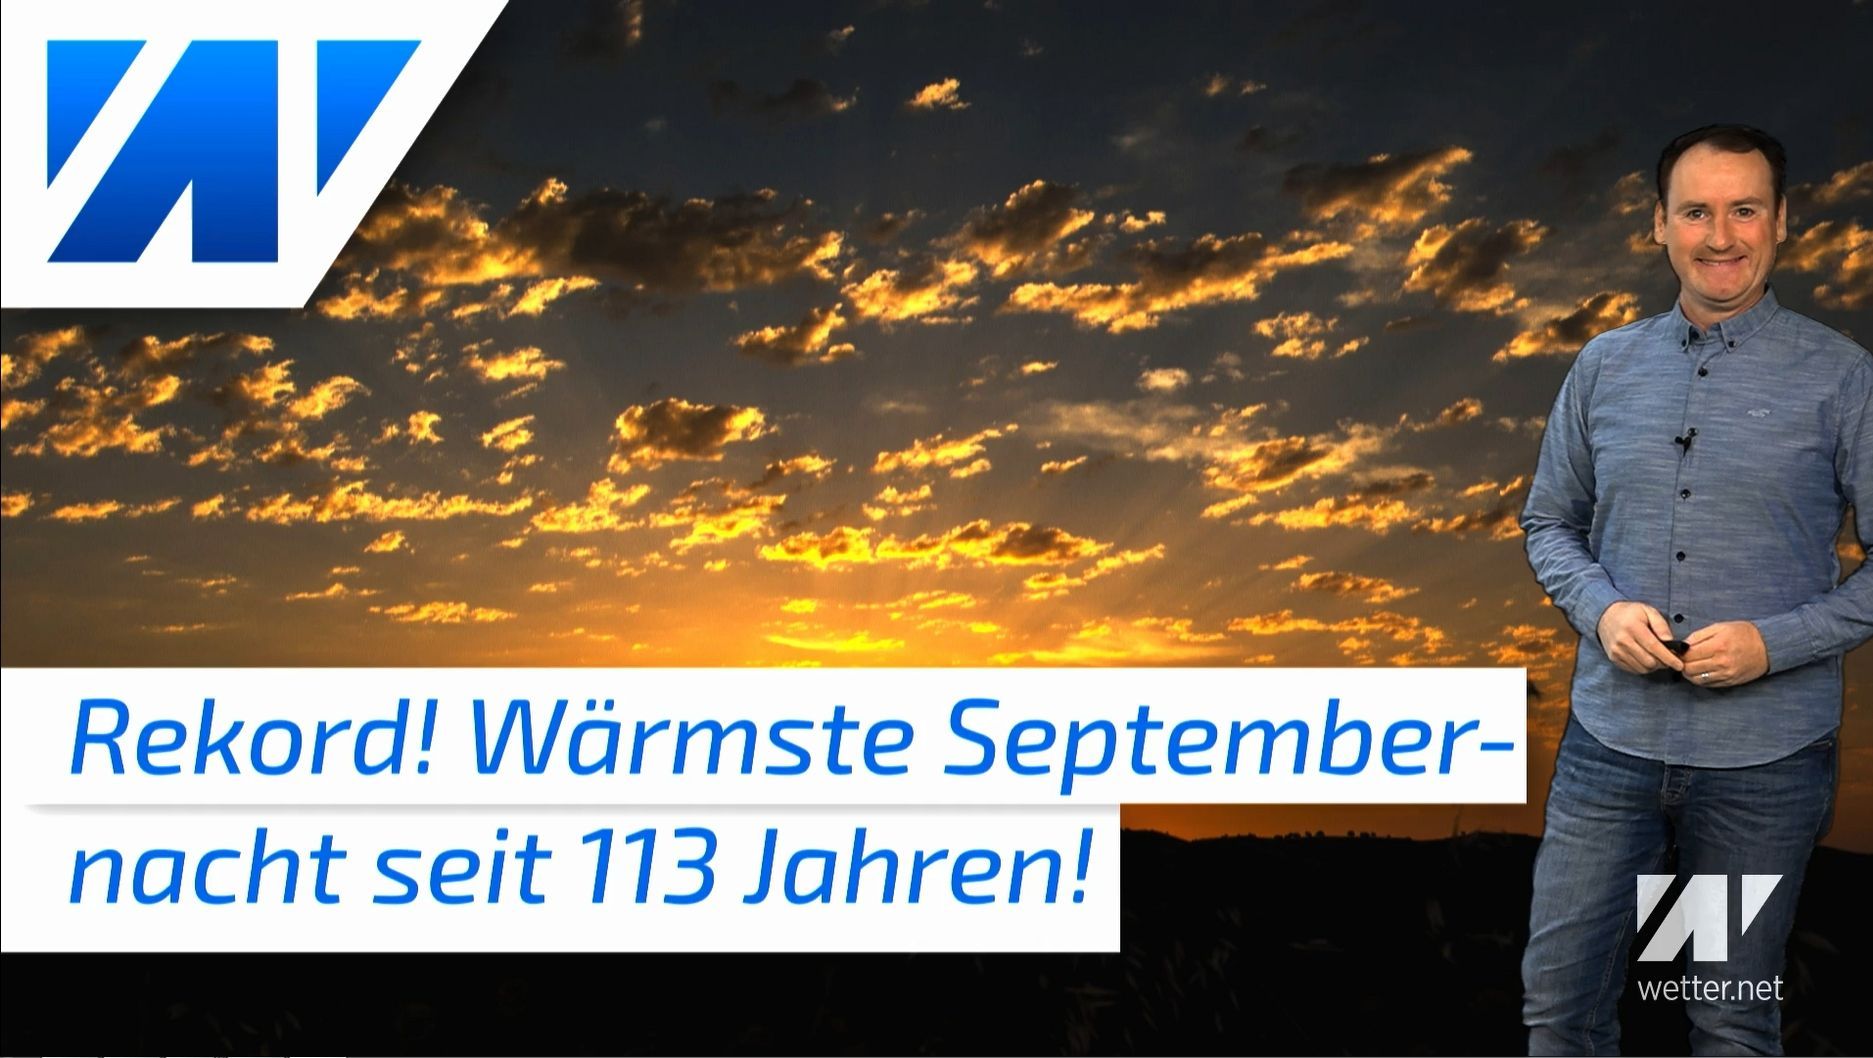 Rekord in Deutschland! Wärmste Septembernacht seit 113 Jahren! Lokal sogar tropische Nacht!